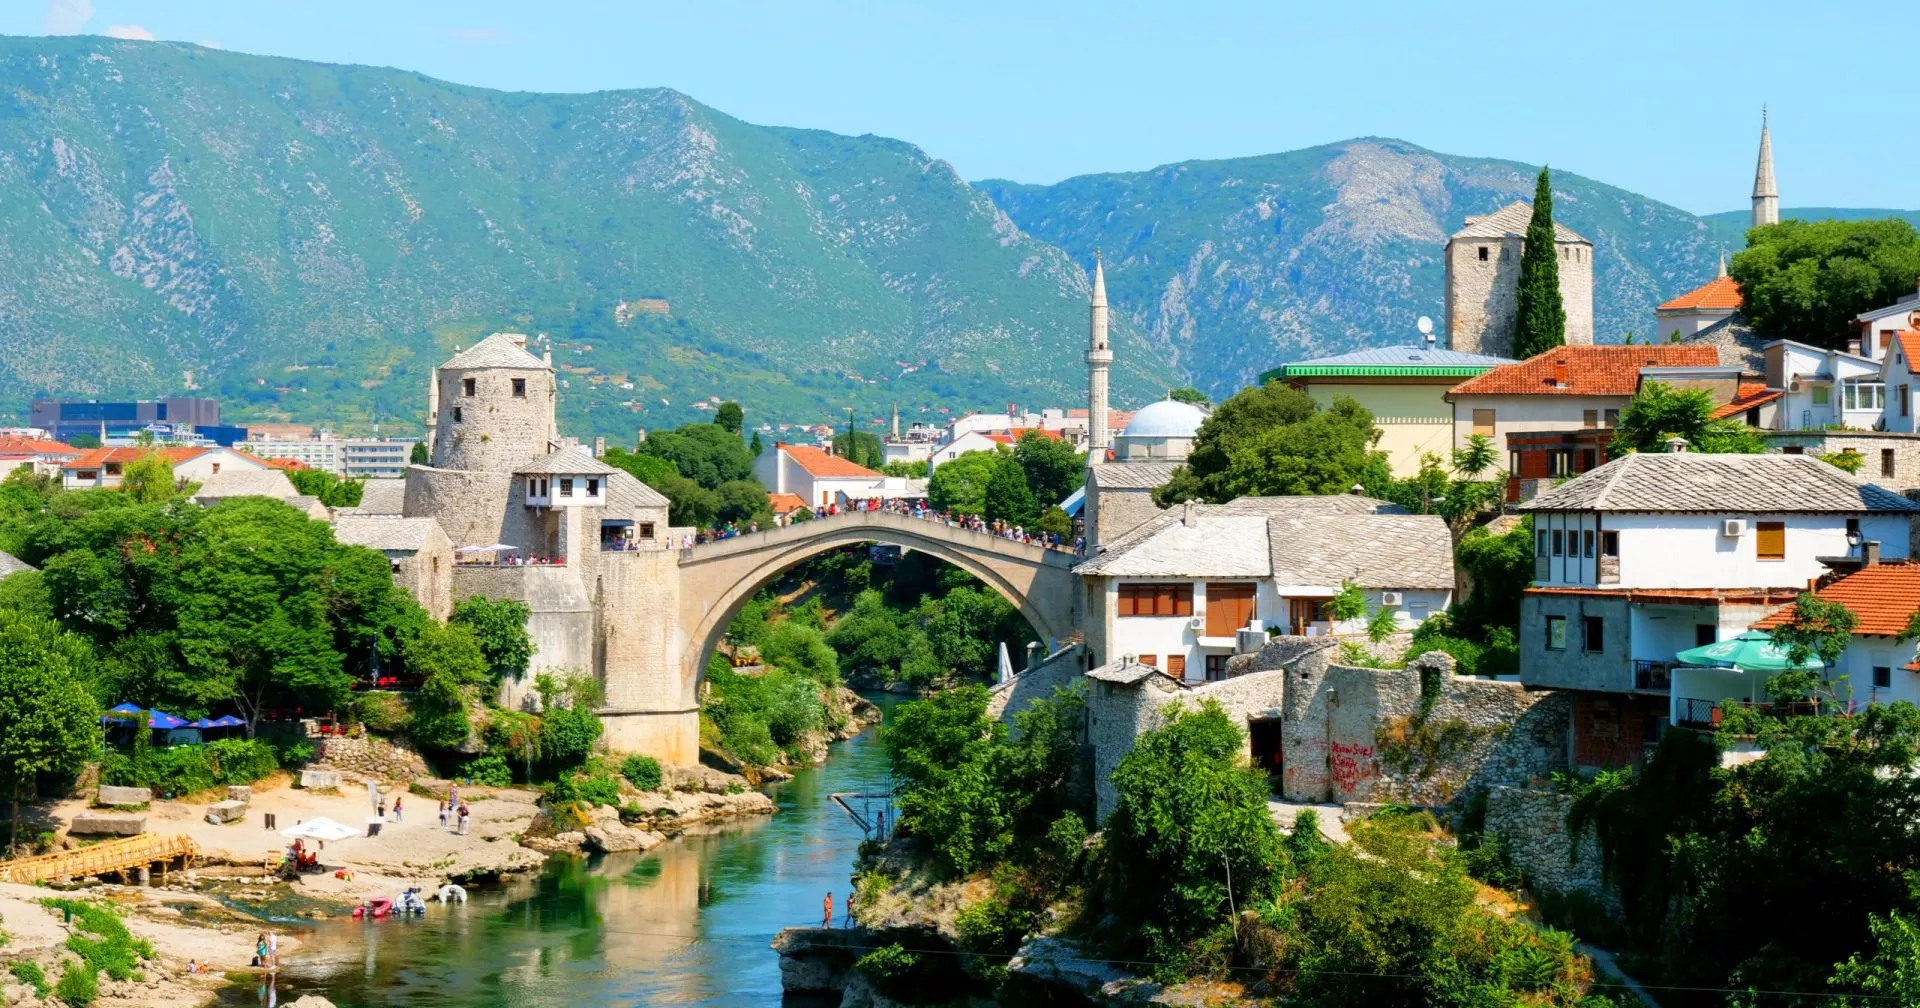 Bosnie-Herzégovine, Mostar avec mosquée et rivière turquoise